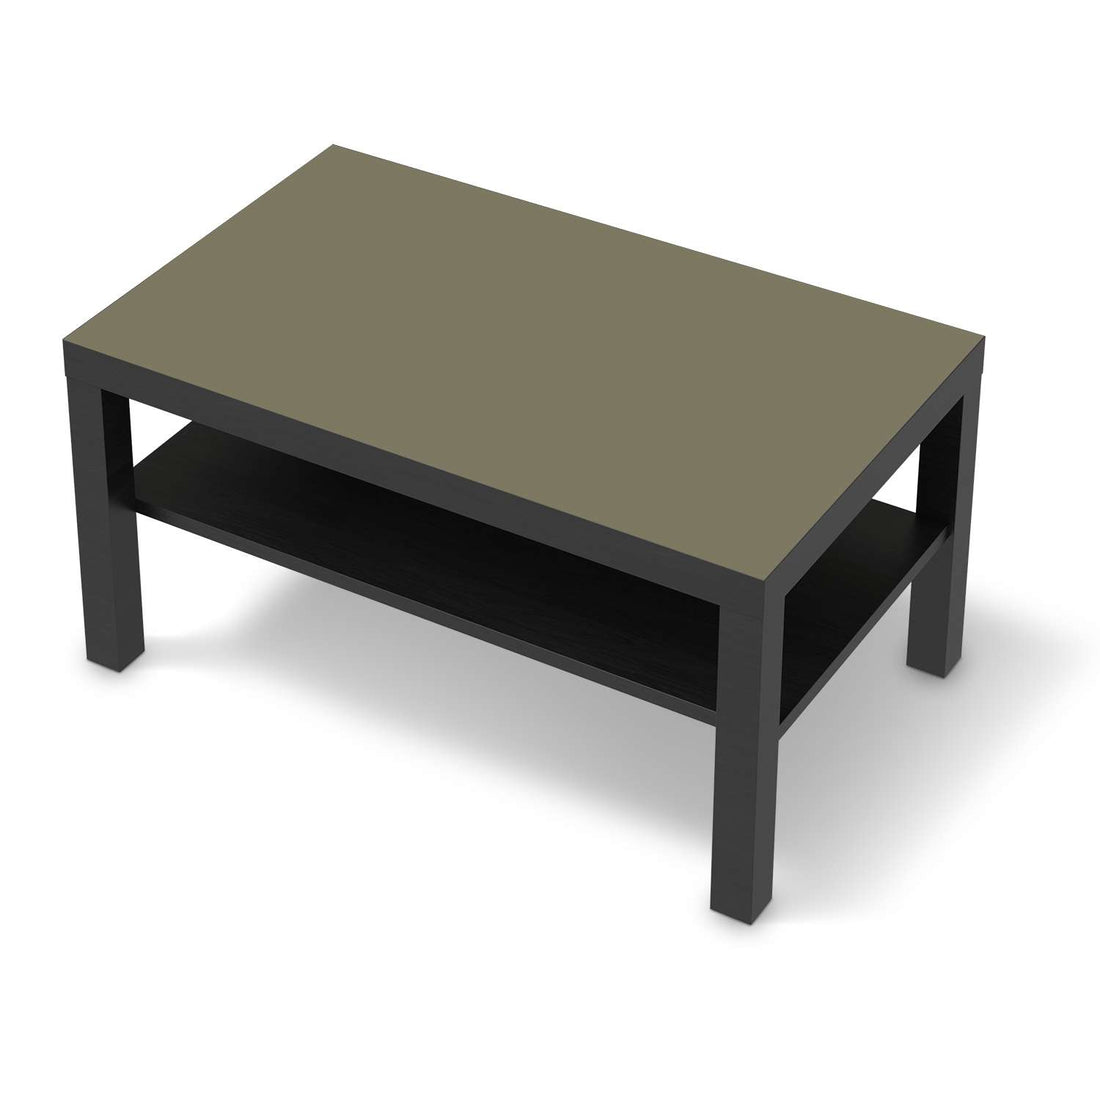 Möbelfolie Braungrau Light - IKEA Lack Tisch 90x55 cm - schwarz